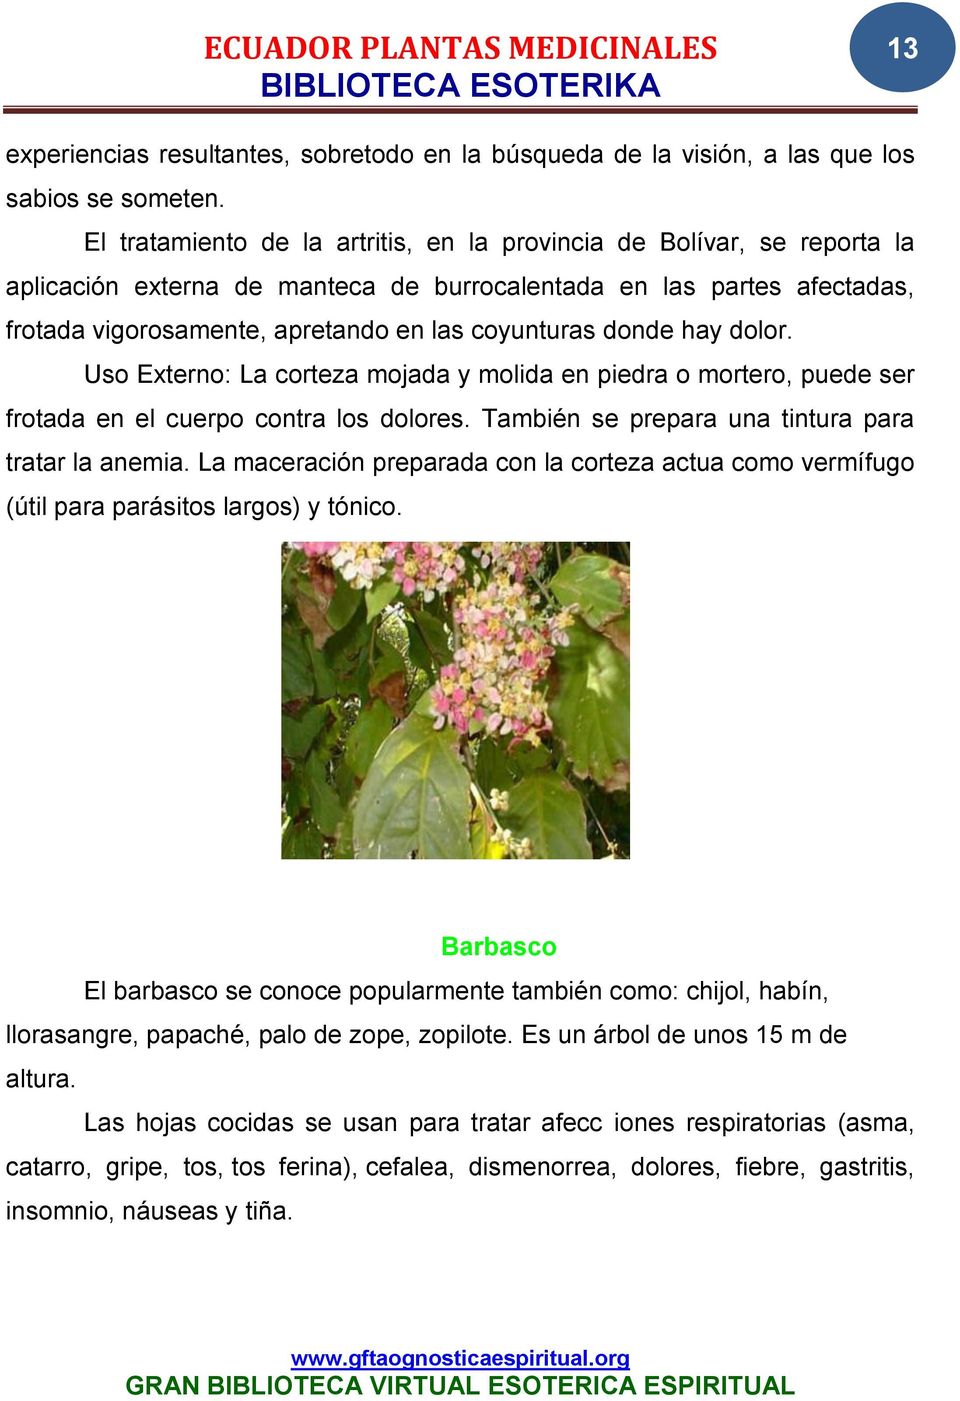 Ecuador Plantas Medicinales Biblioteca Esoterika Pdf Descargar Libre